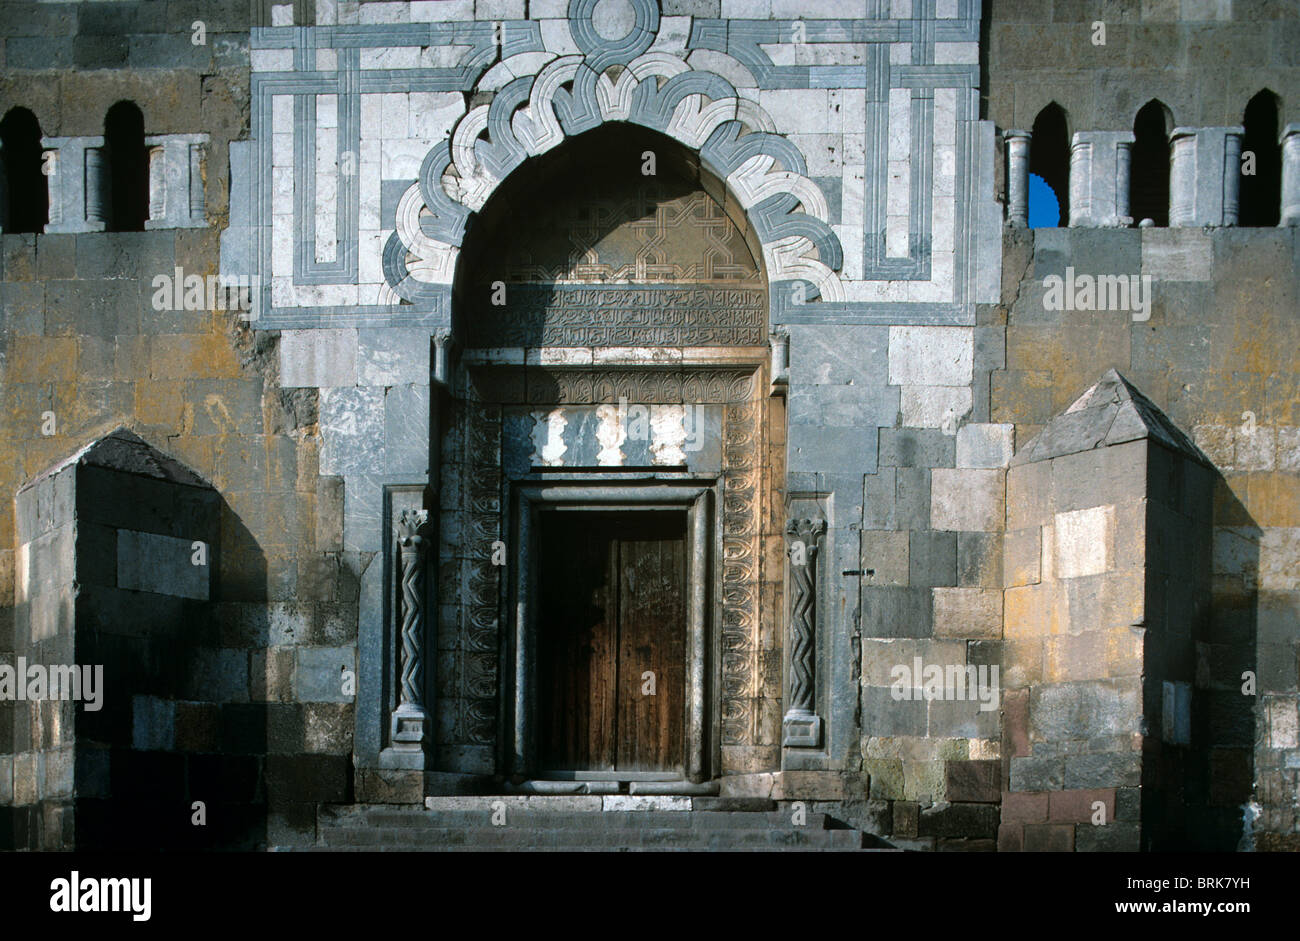 Las Puertas De Piedra Medievales De Alaeddin Citadel Decoradas Con Motivos  Islámicos Hechos De Mosaicos De Piedra, Konya, Turquía. Fotos, retratos,  imágenes y fotografía de archivo libres de derecho. Image 50189467